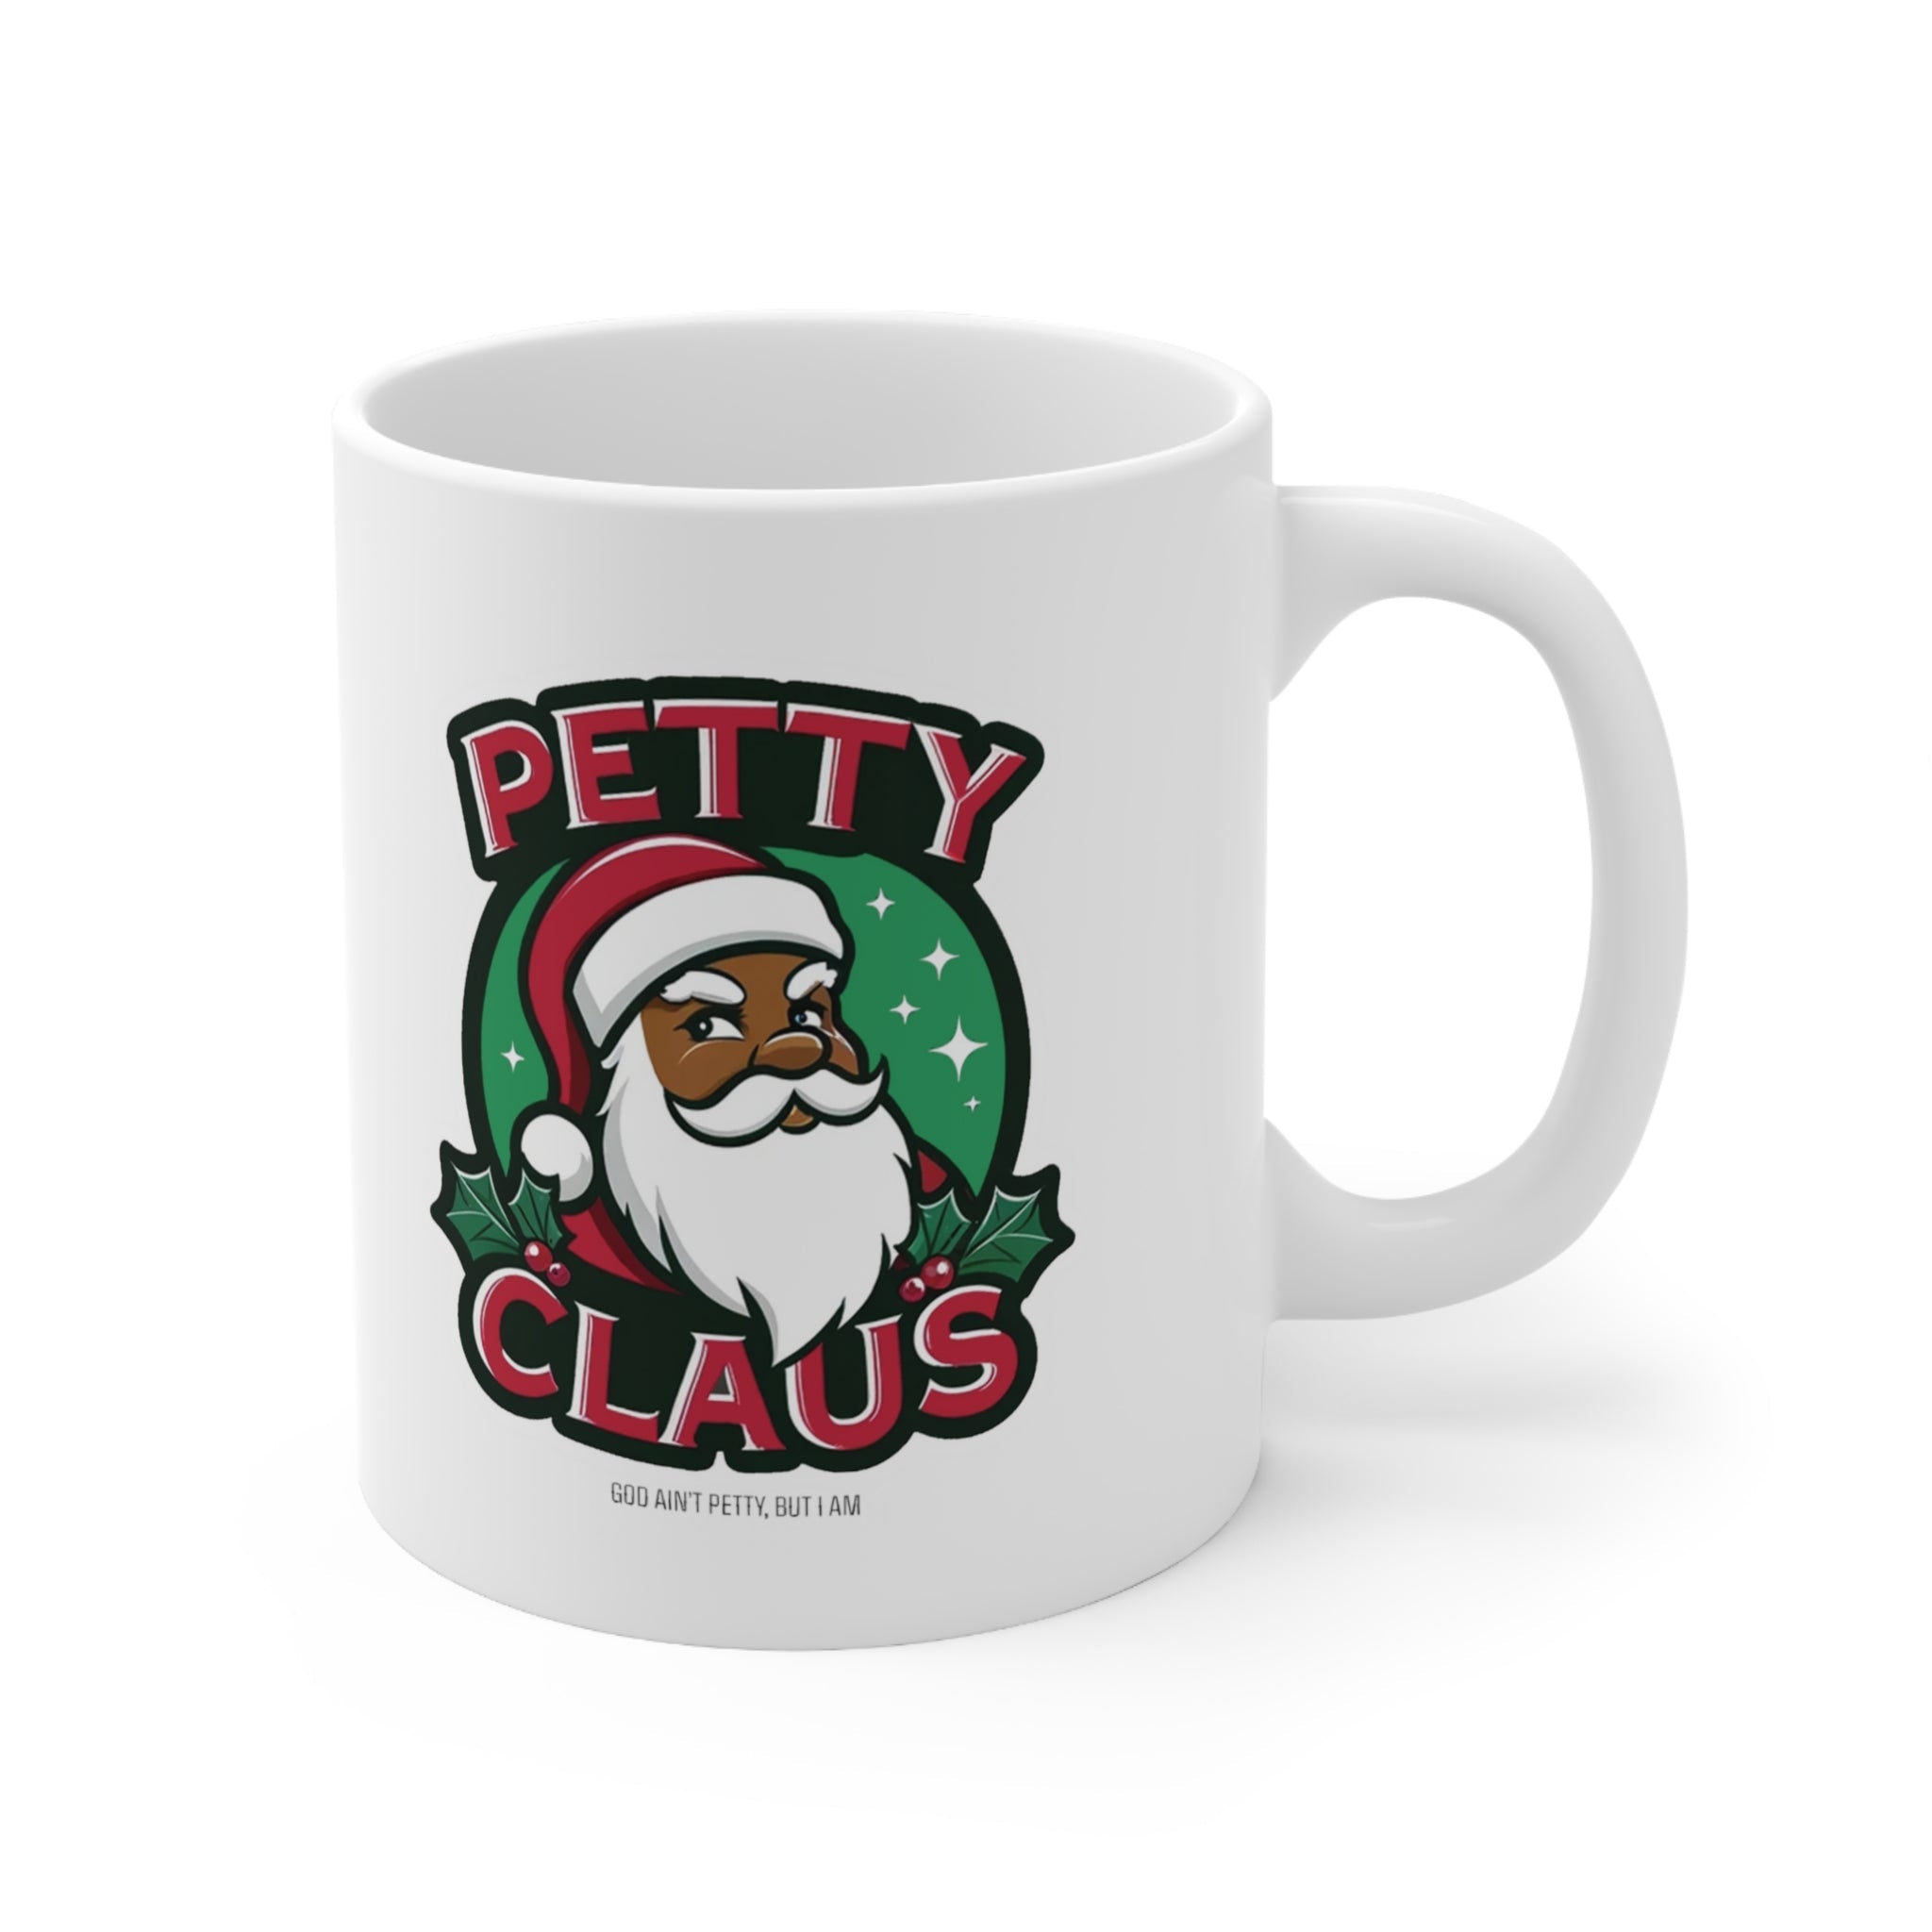 Petty Claus Image Ceramic Mug 11oz-Mug-The Original God Ain't Petty But I Am